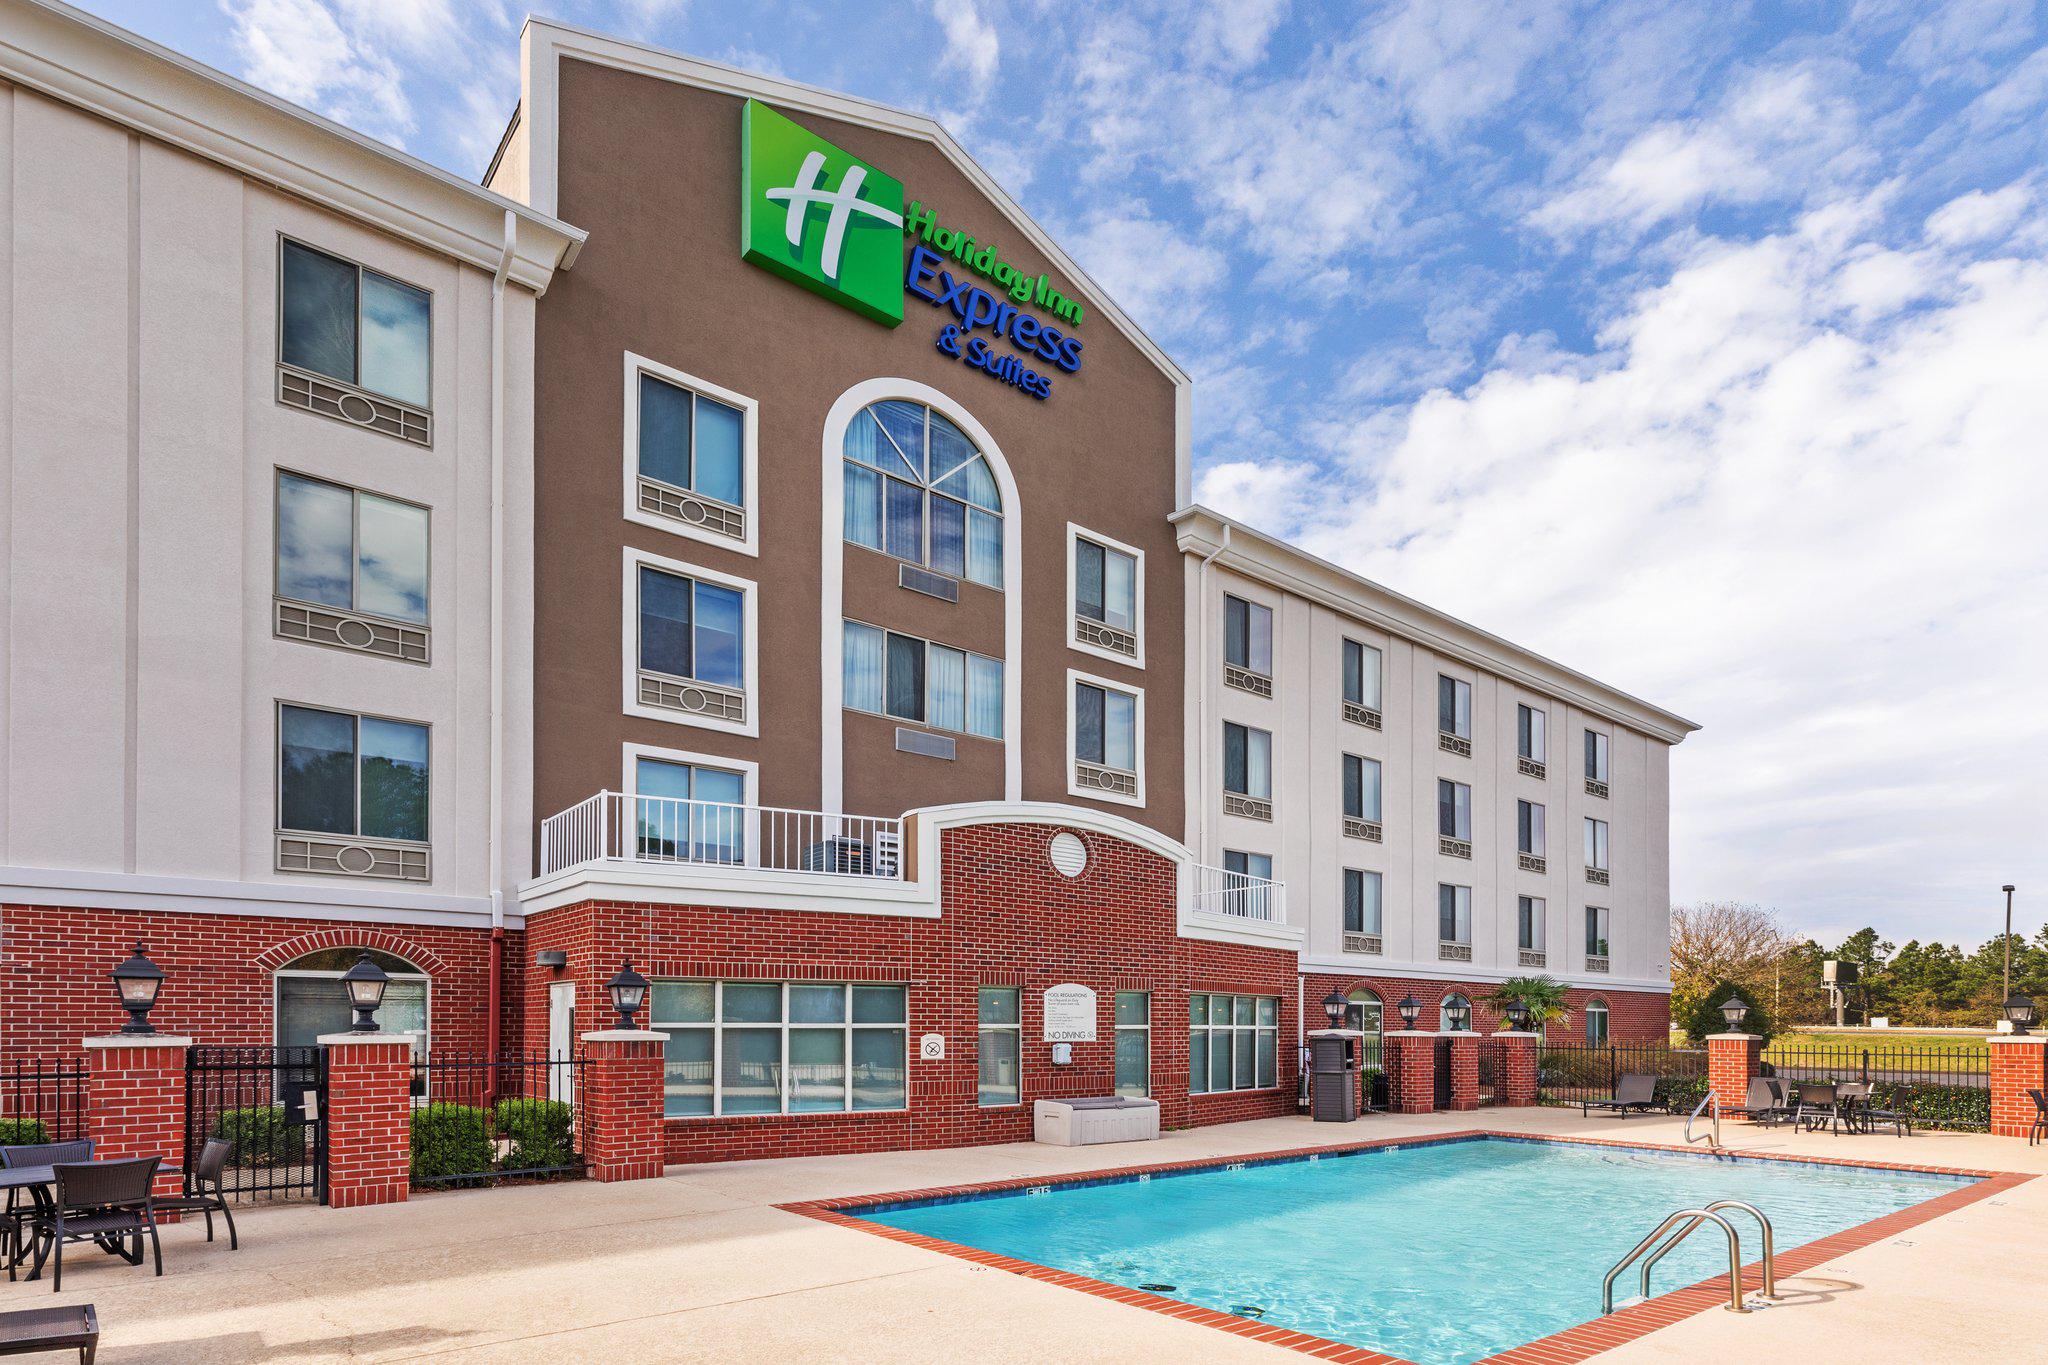 Holiday Inn Express & Suites Shreveport - West, an IHG Hotel Shreveport (318)506-8148